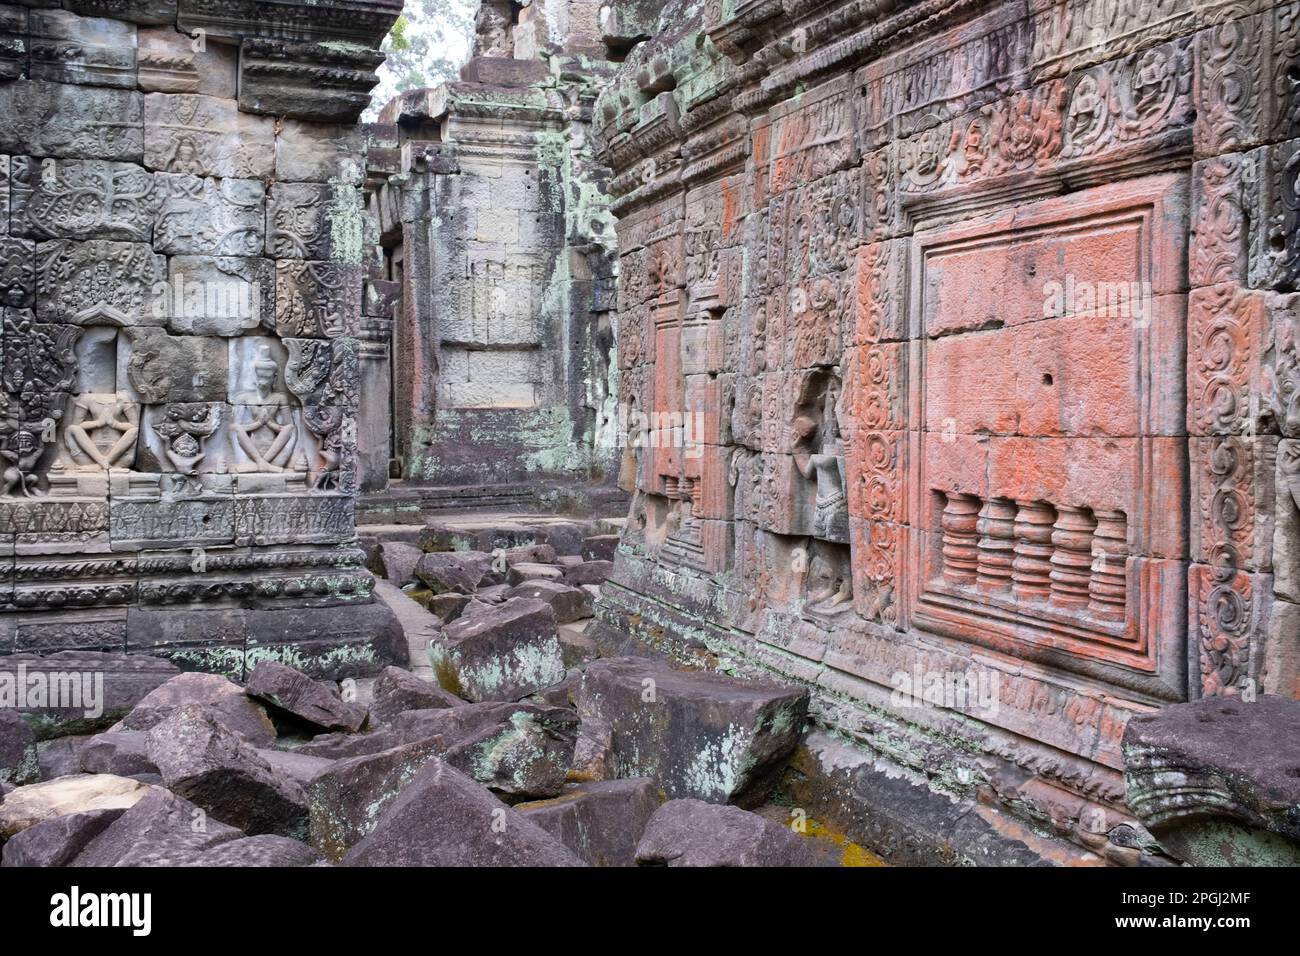 Cambogia: Preah Khan (Tempio della Sacra spada). Preah Khan è stato costruito nel tardo 12th ° secolo (1191) da Jayavarman VII e si trova appena a nord di Angkor Thom. Il tempio fu costruito sul luogo della vittoria di Jayavarman VII sui Chams invasori nel 1191. Era il centro di una grande organizzazione, con quasi 100.000 funzionari e funzionari. In un tempo era un'università buddista. La divinità primaria del tempio è la boddhisatva Avalokiteshvara, nella forma del padre di Jayavarman. Foto Stock